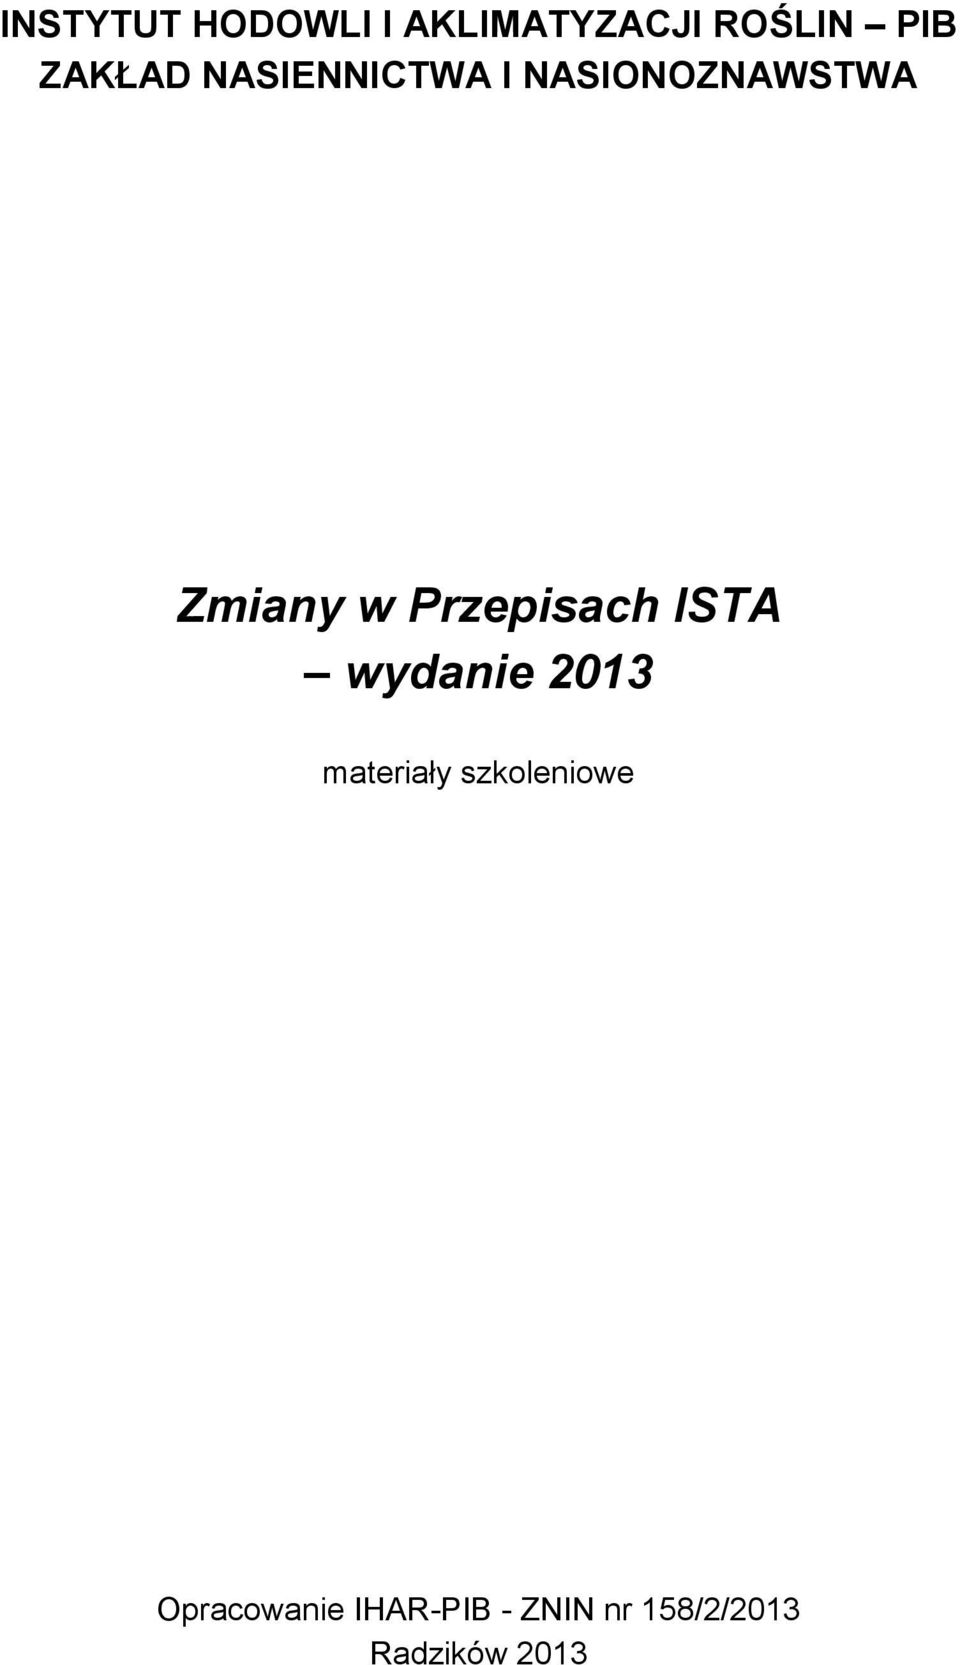 Przepisach ISTA wydanie 2013 materiały